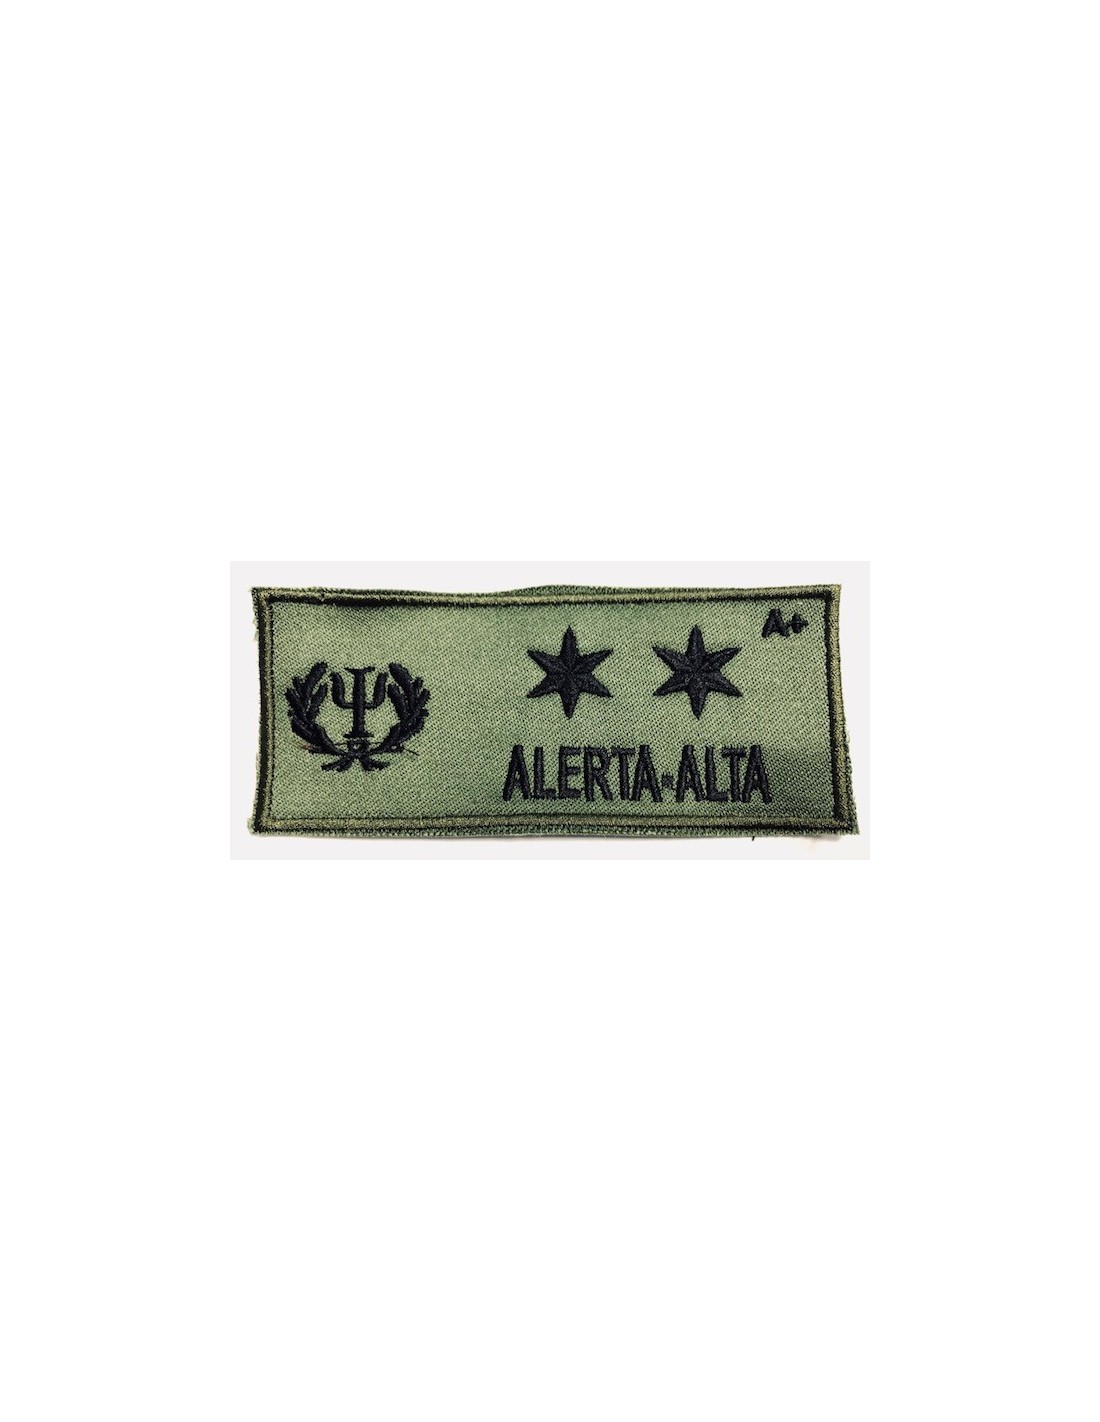 Estrella Militar - Parche bordado galleta de aviación